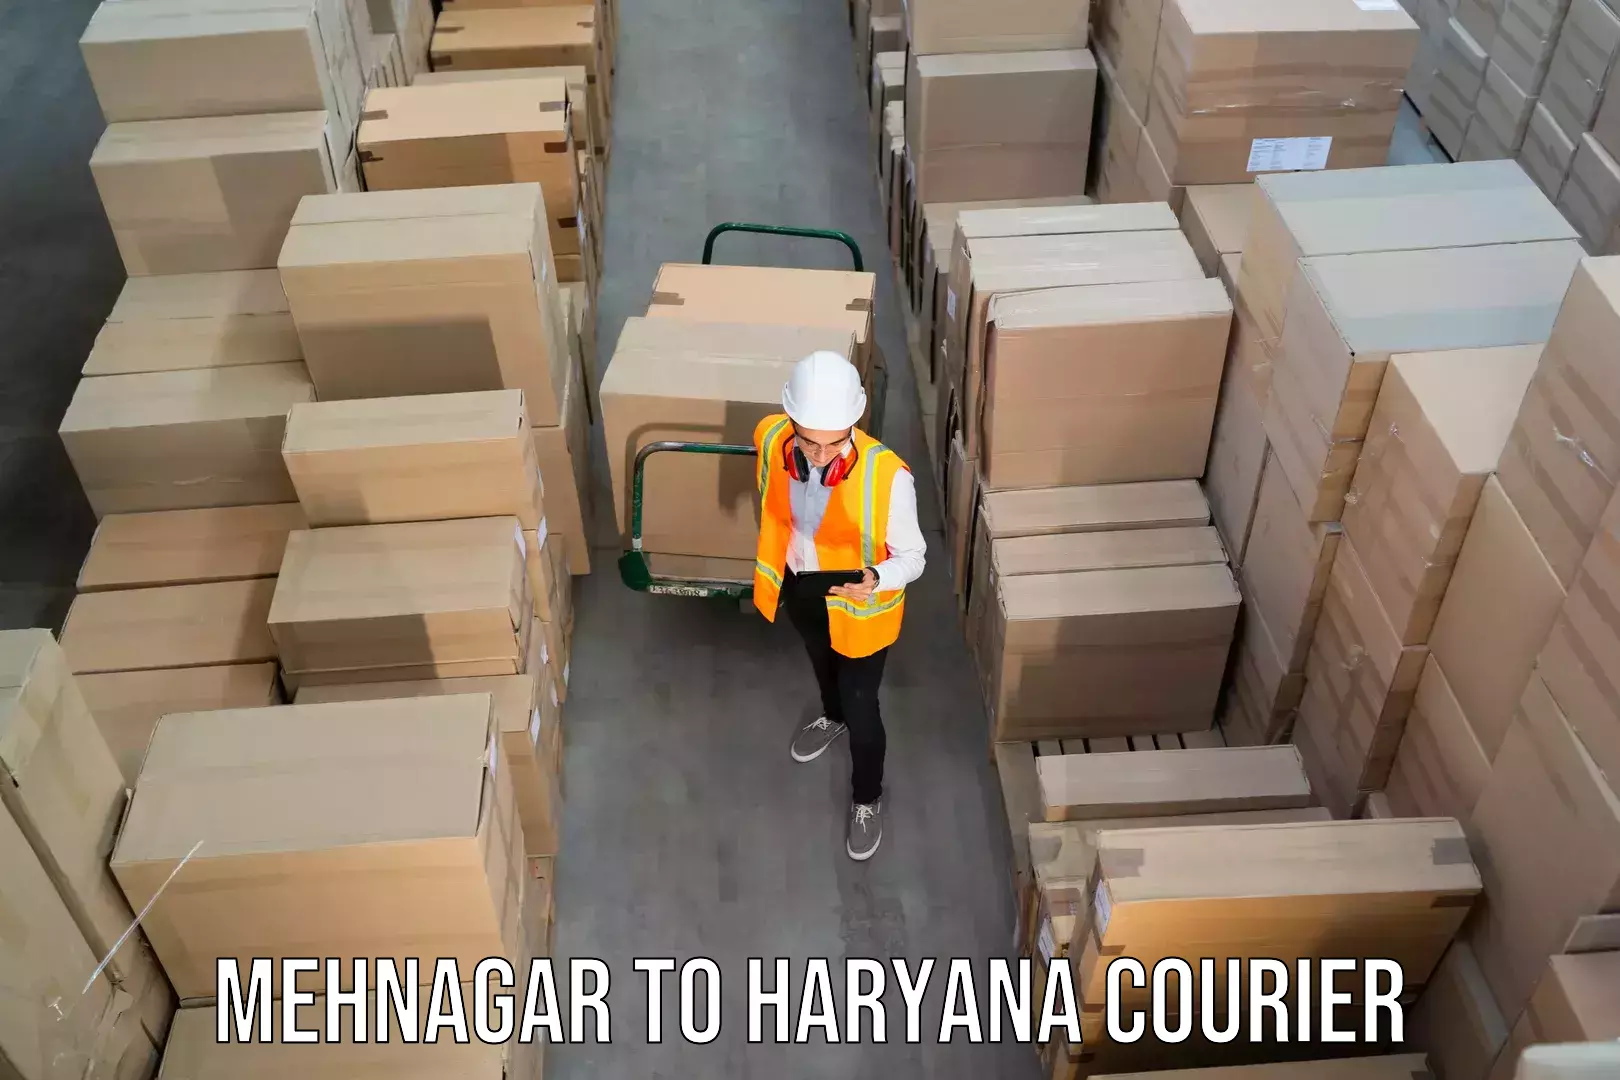 Doorstep delivery service Mehnagar to Chirya